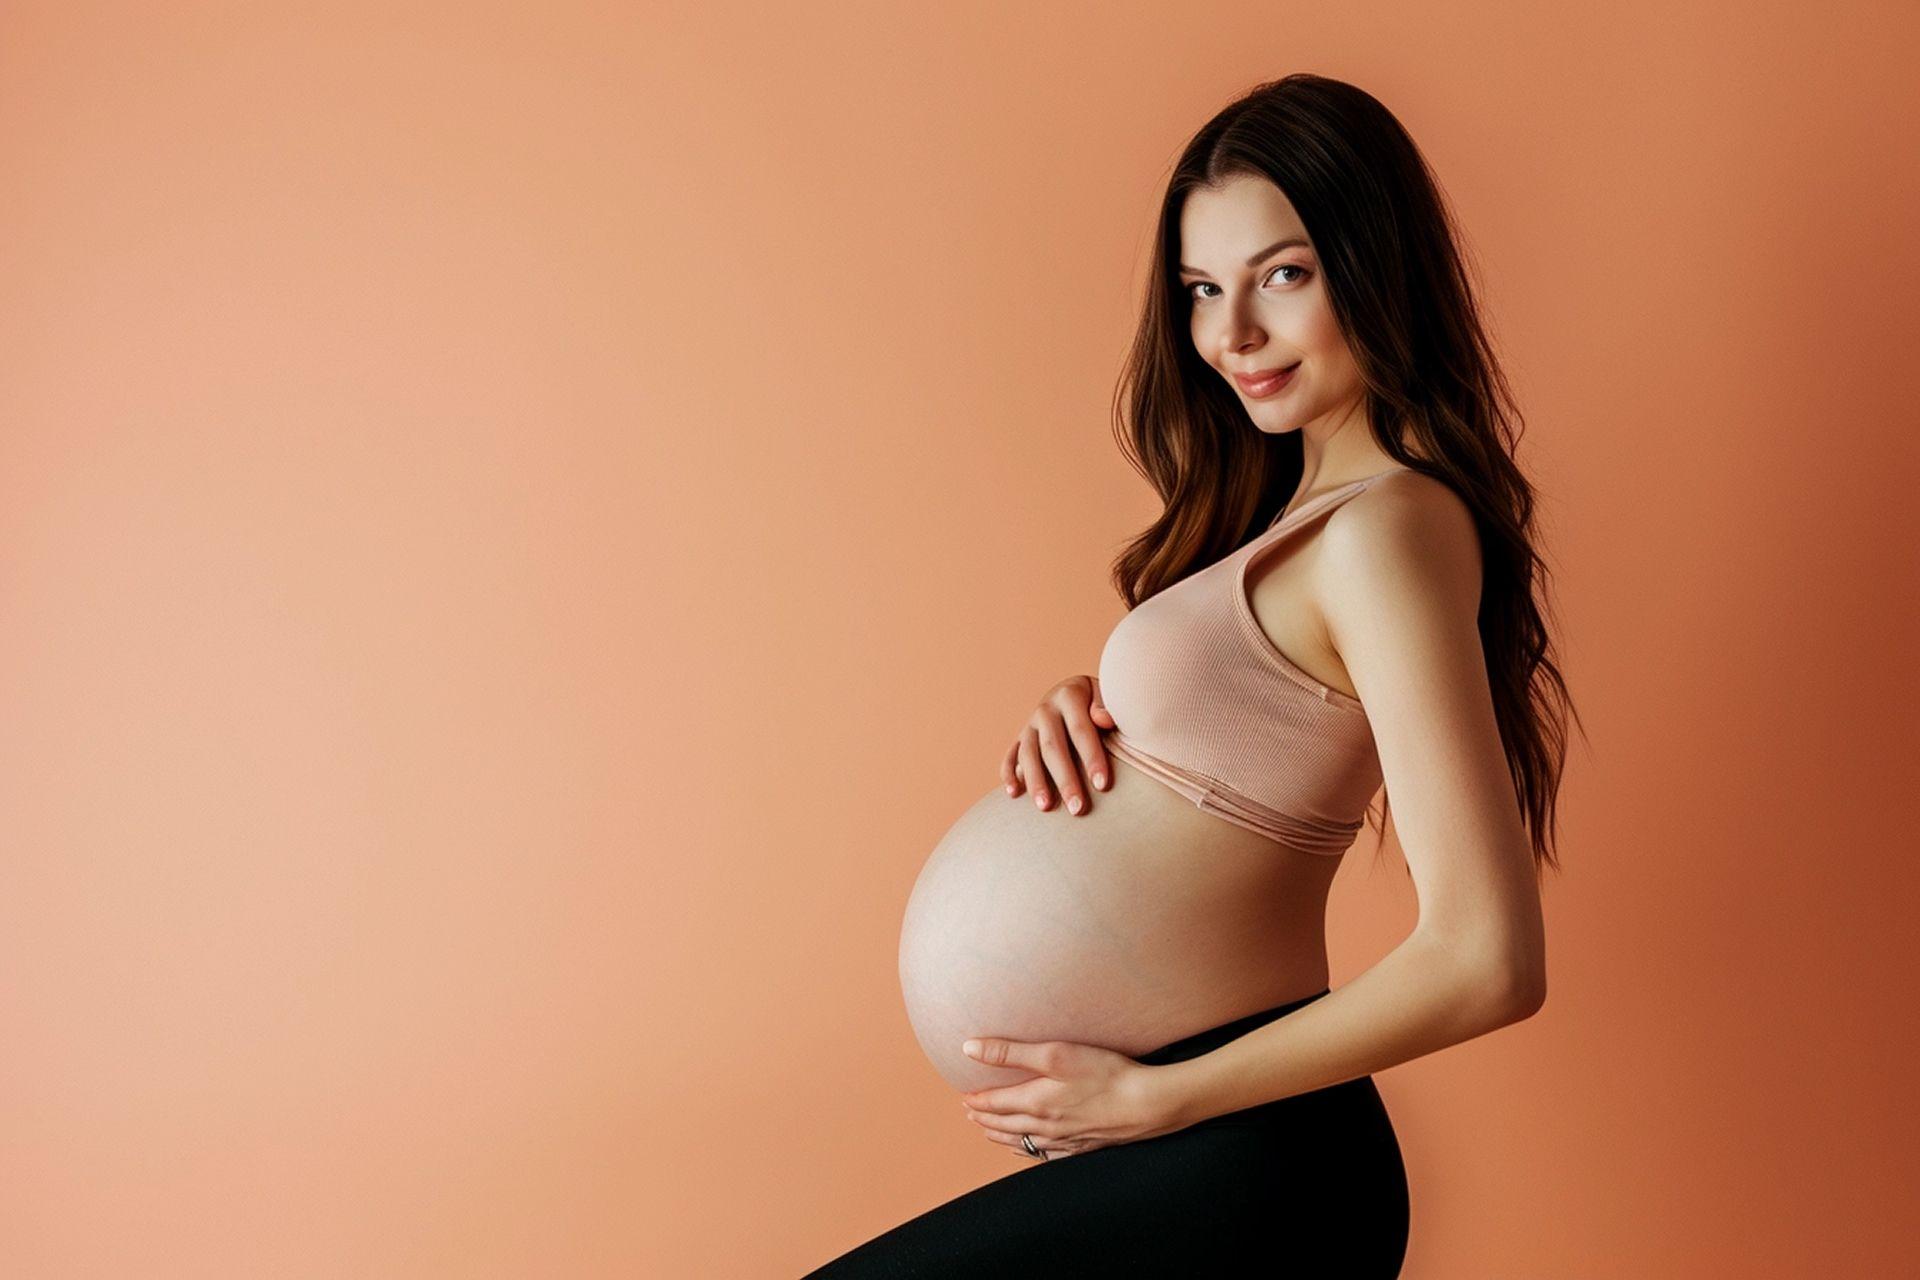 Mujer embarazada con gestación avanzada. Codigo2 Studios